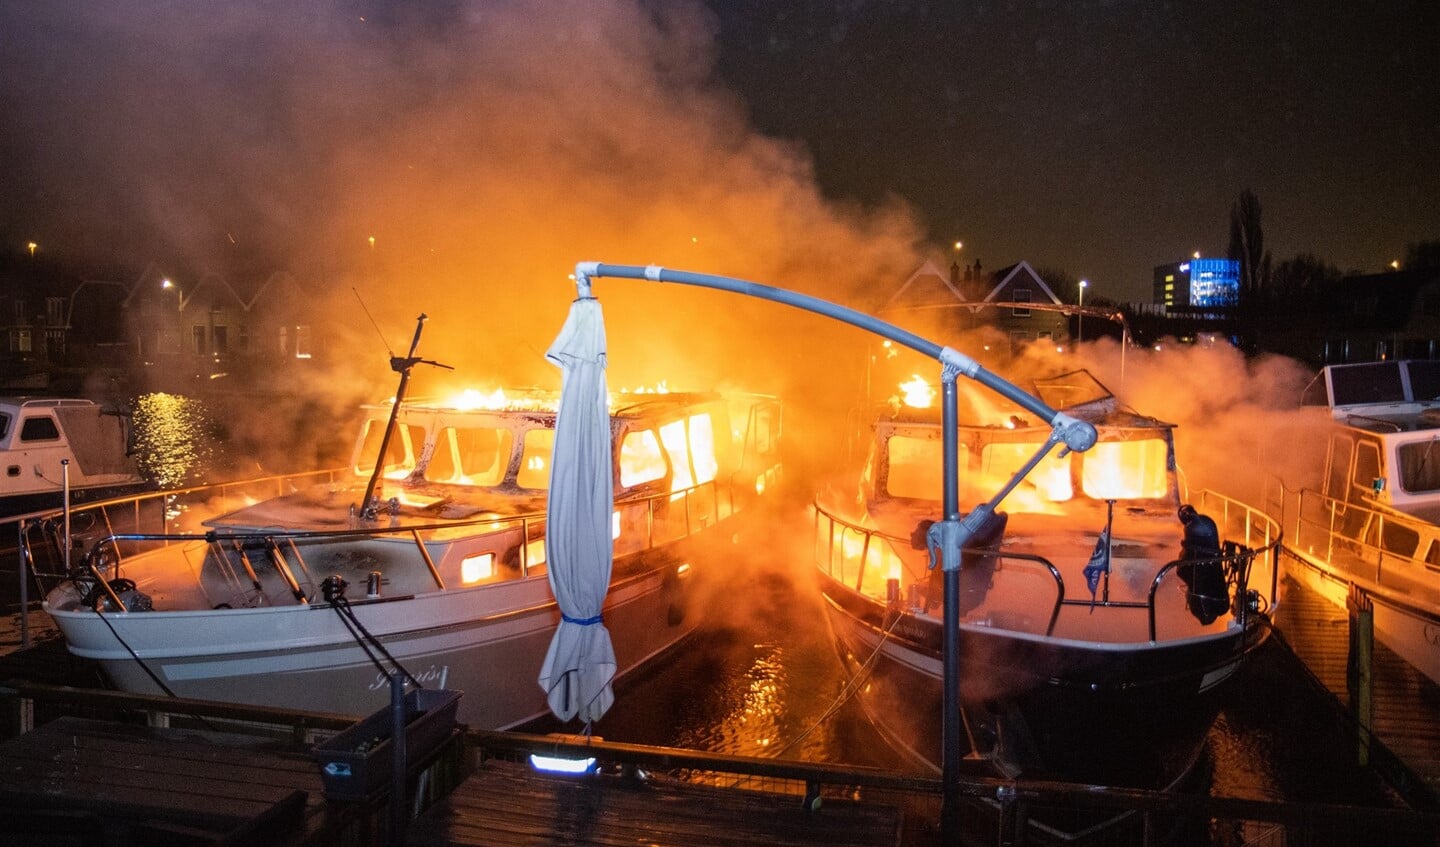 De brandende plezierjachten in de haven aan het Prinsmolenpad. Foto: GinoPress B.V.